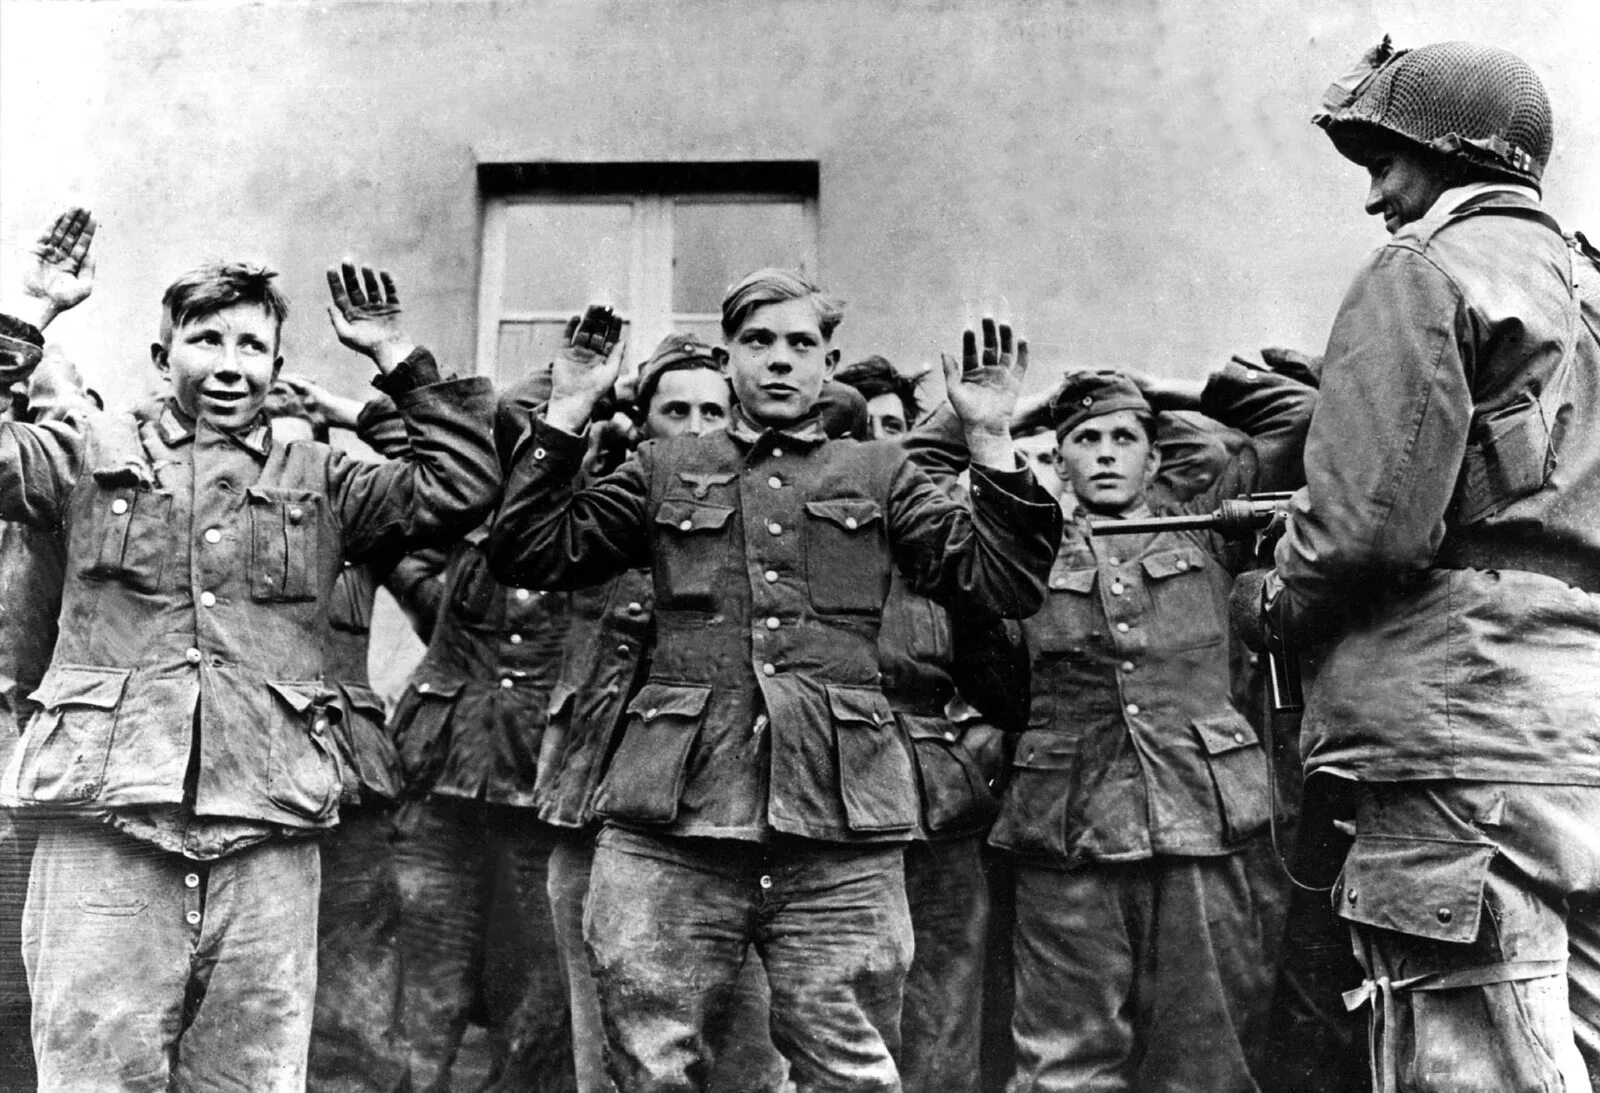 Гитлерюгенд в Берлине 1945 пленные. Дети и солдаты вермахта 1941. Немецкие солдаты сдаются в плен 1945.